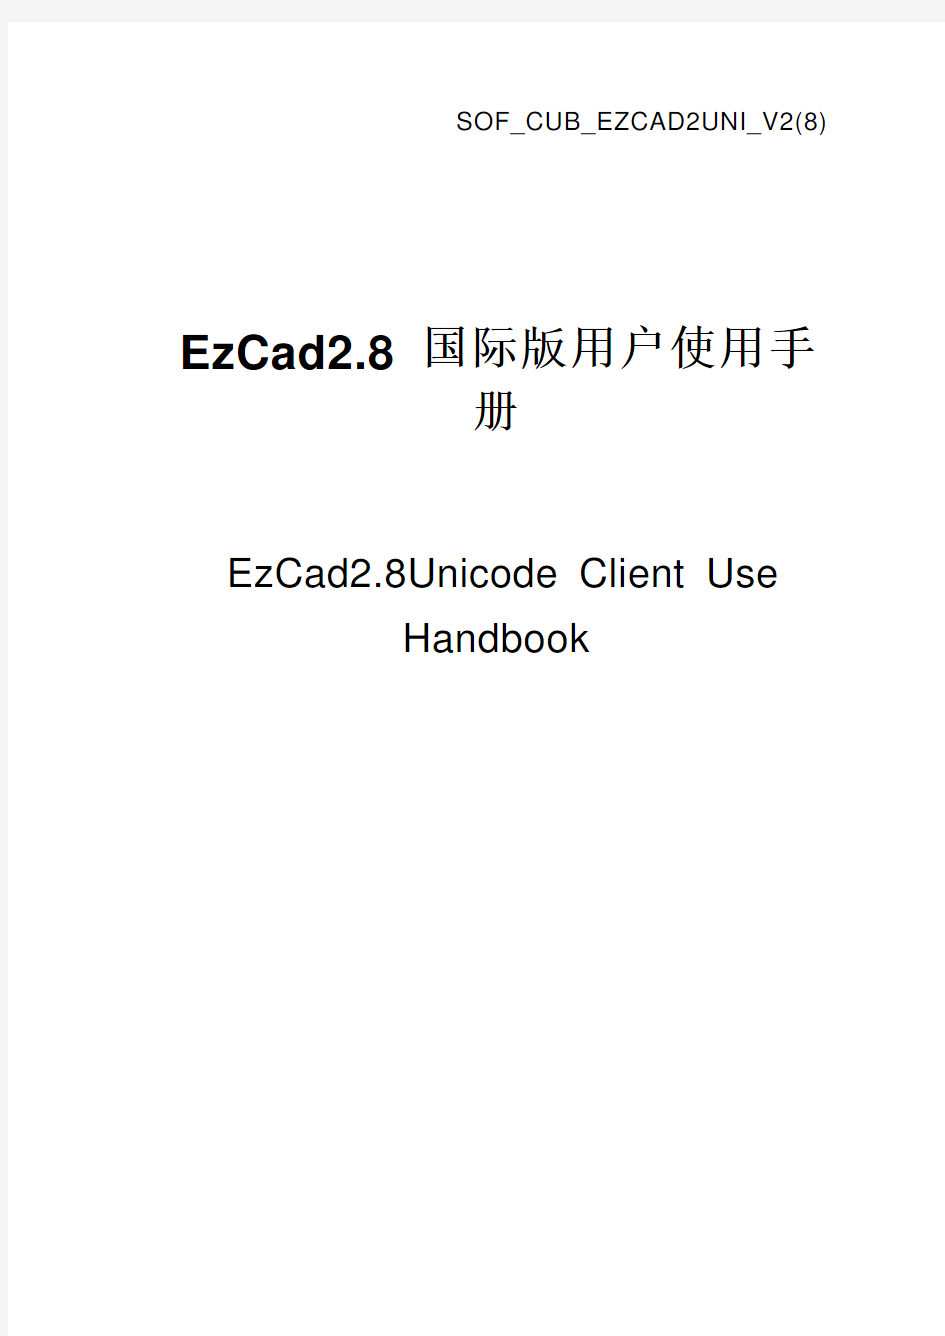 EzCad软件使用说明书